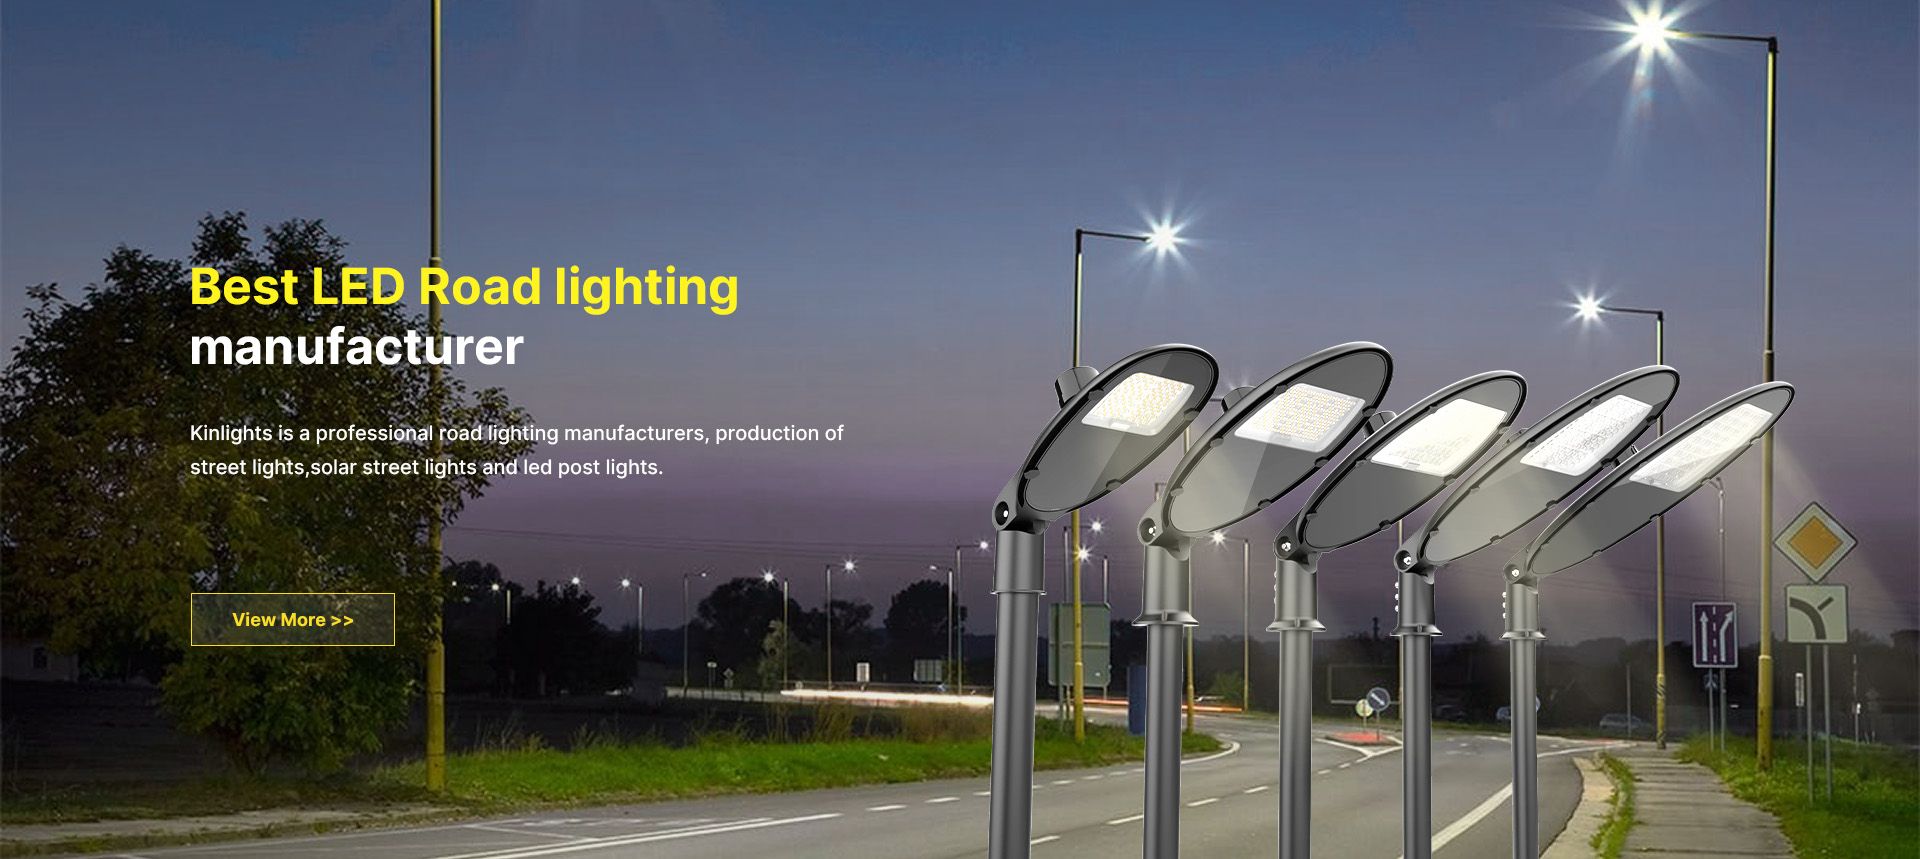 Best LED Road lighting manufacturer